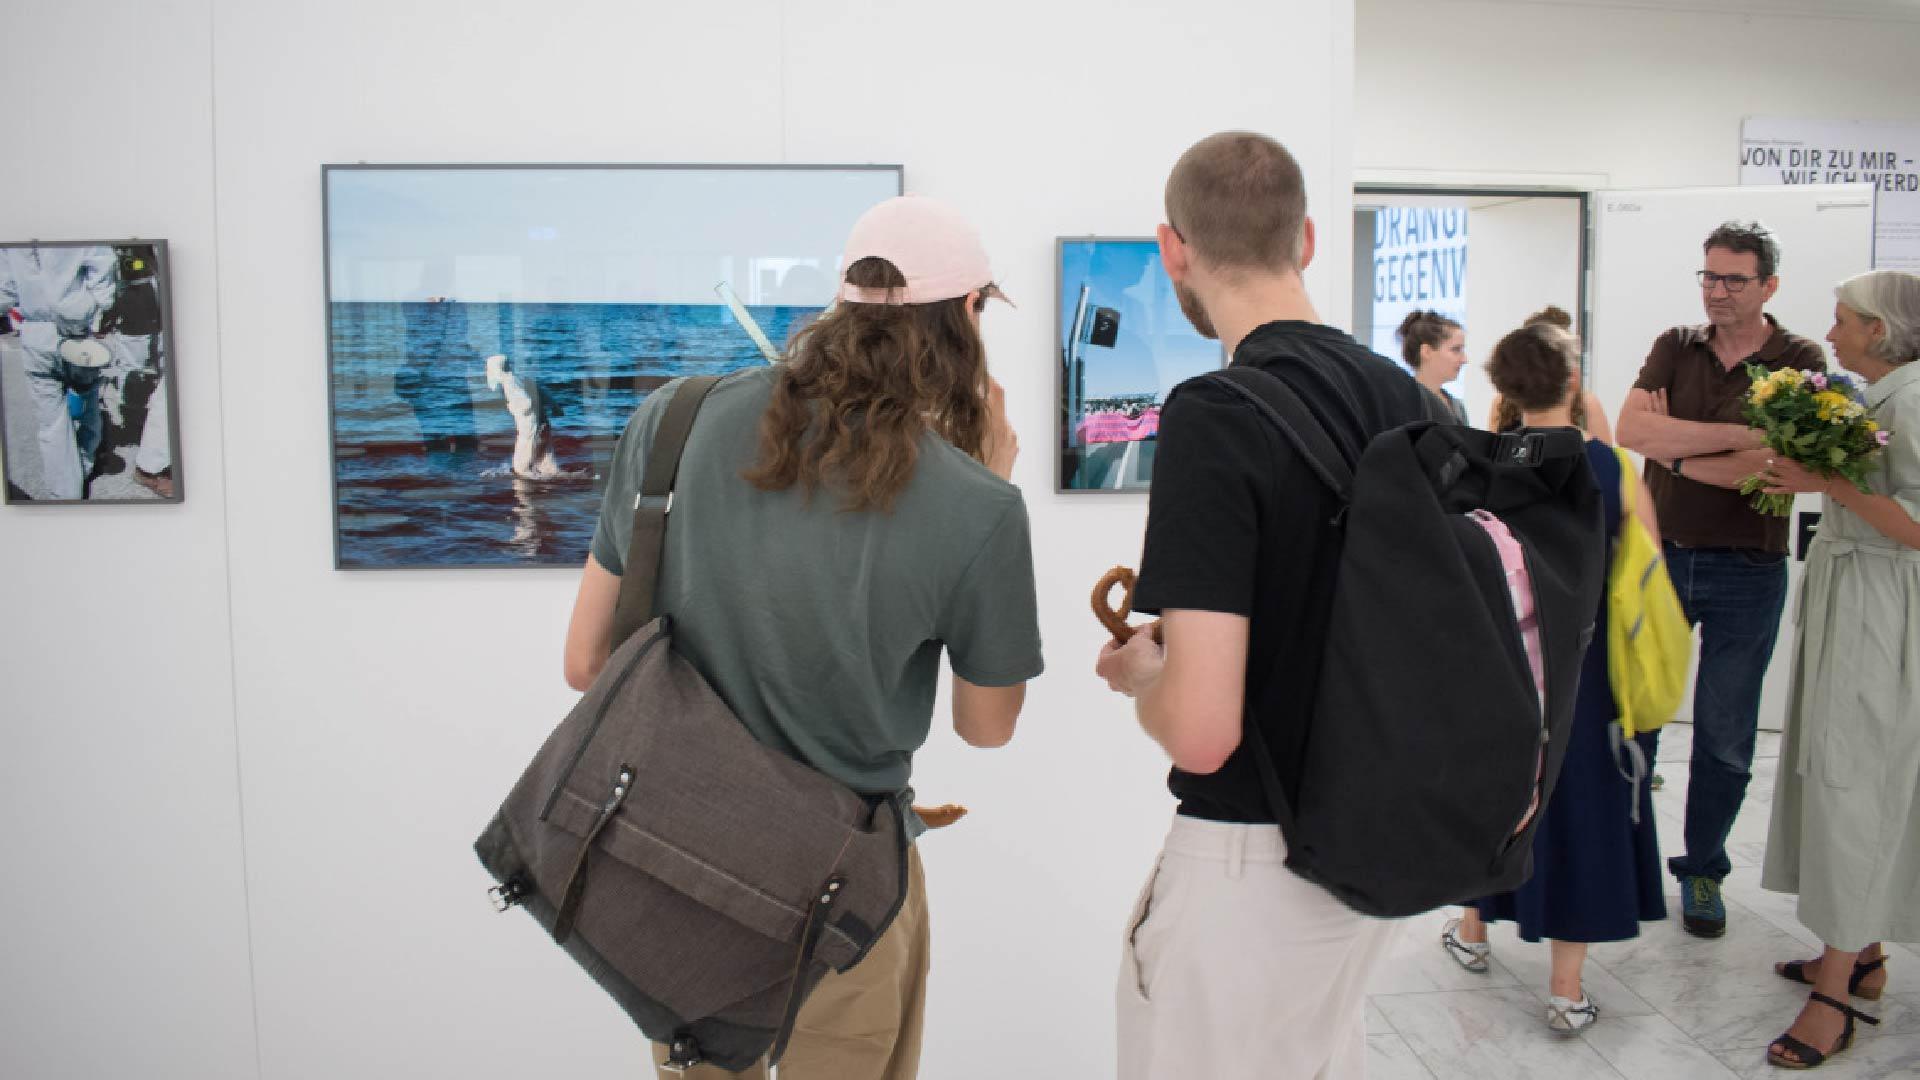 Zwei Personen schauen auf ein eingerahmtes Bild in einem Ausstellungsraum